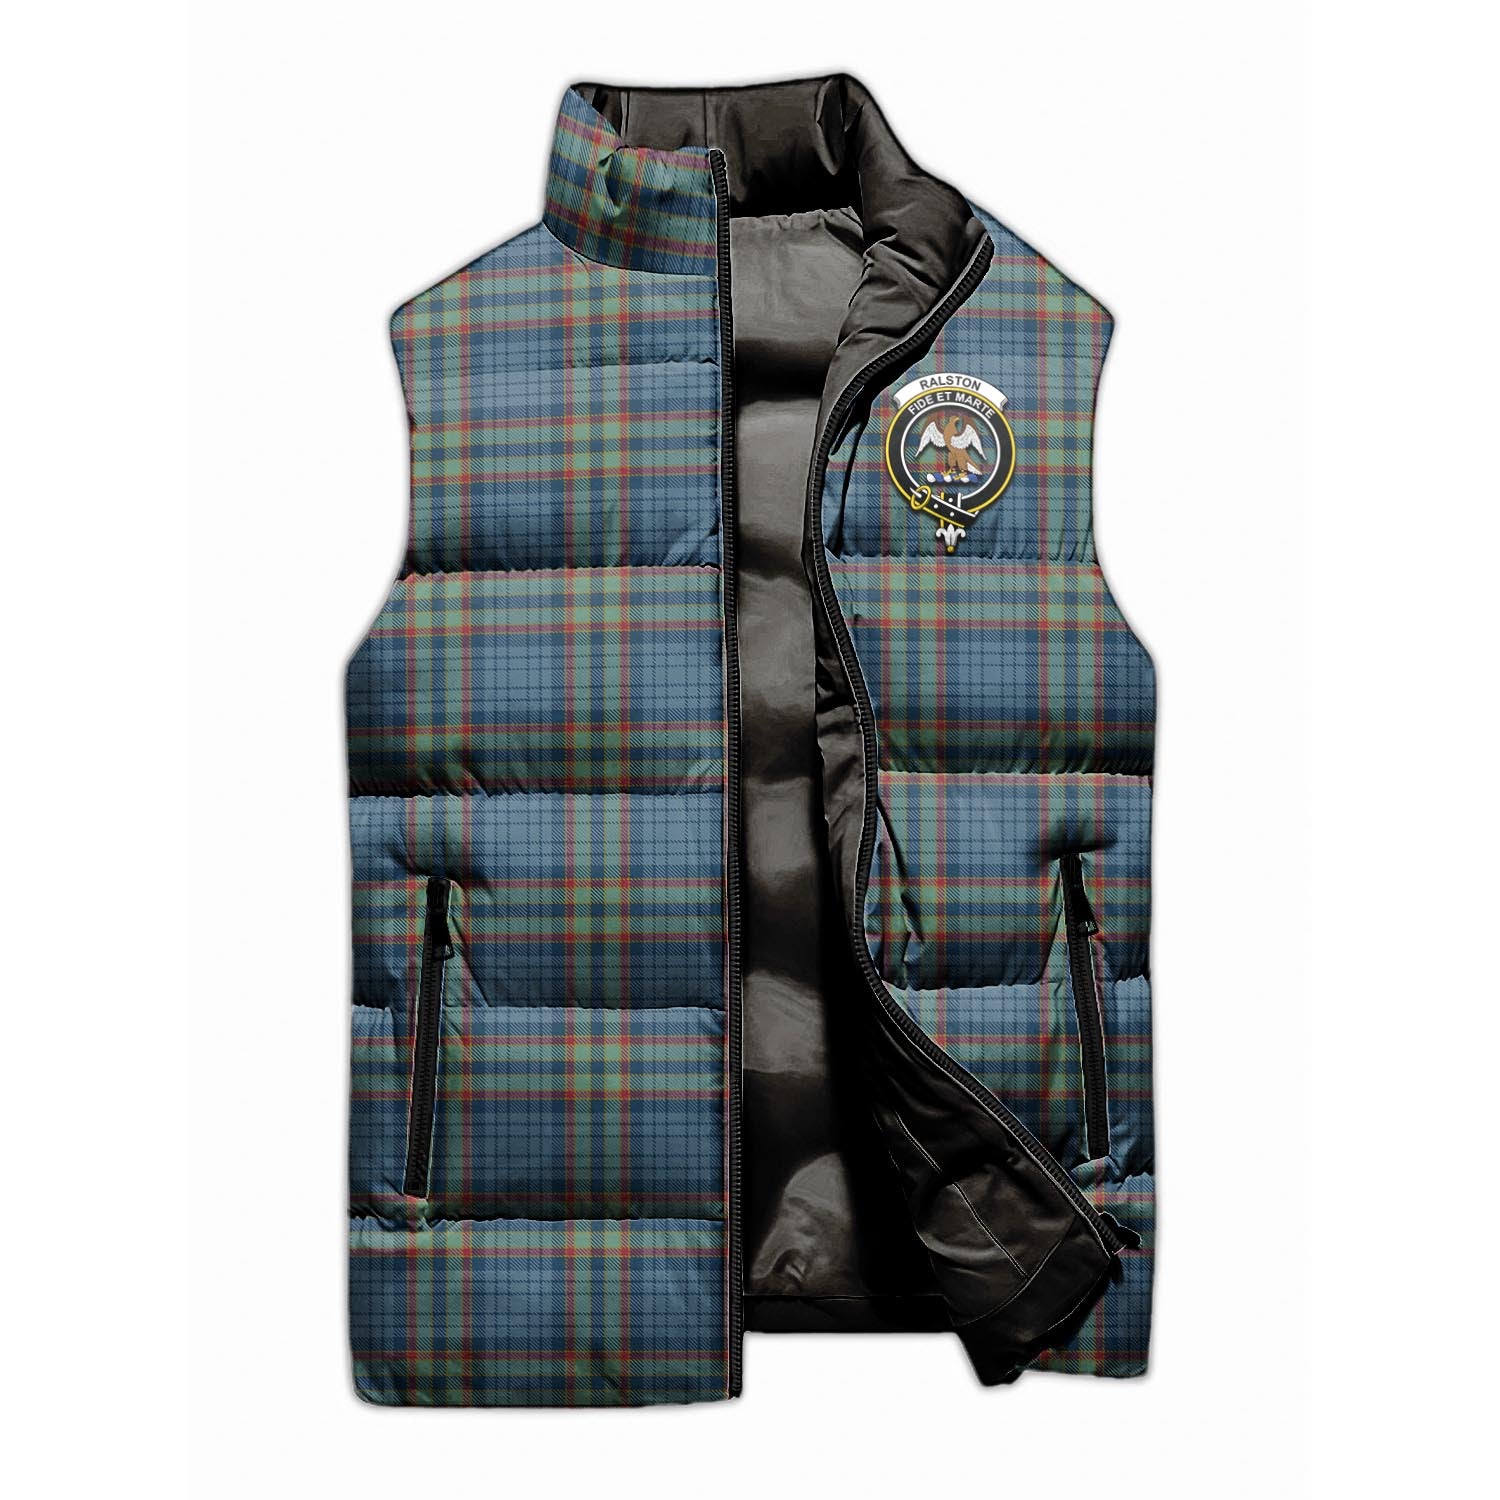 Ralston UK Tartan Sleeveless Puffer Jacket with Family Crest - Tartanvibesclothing